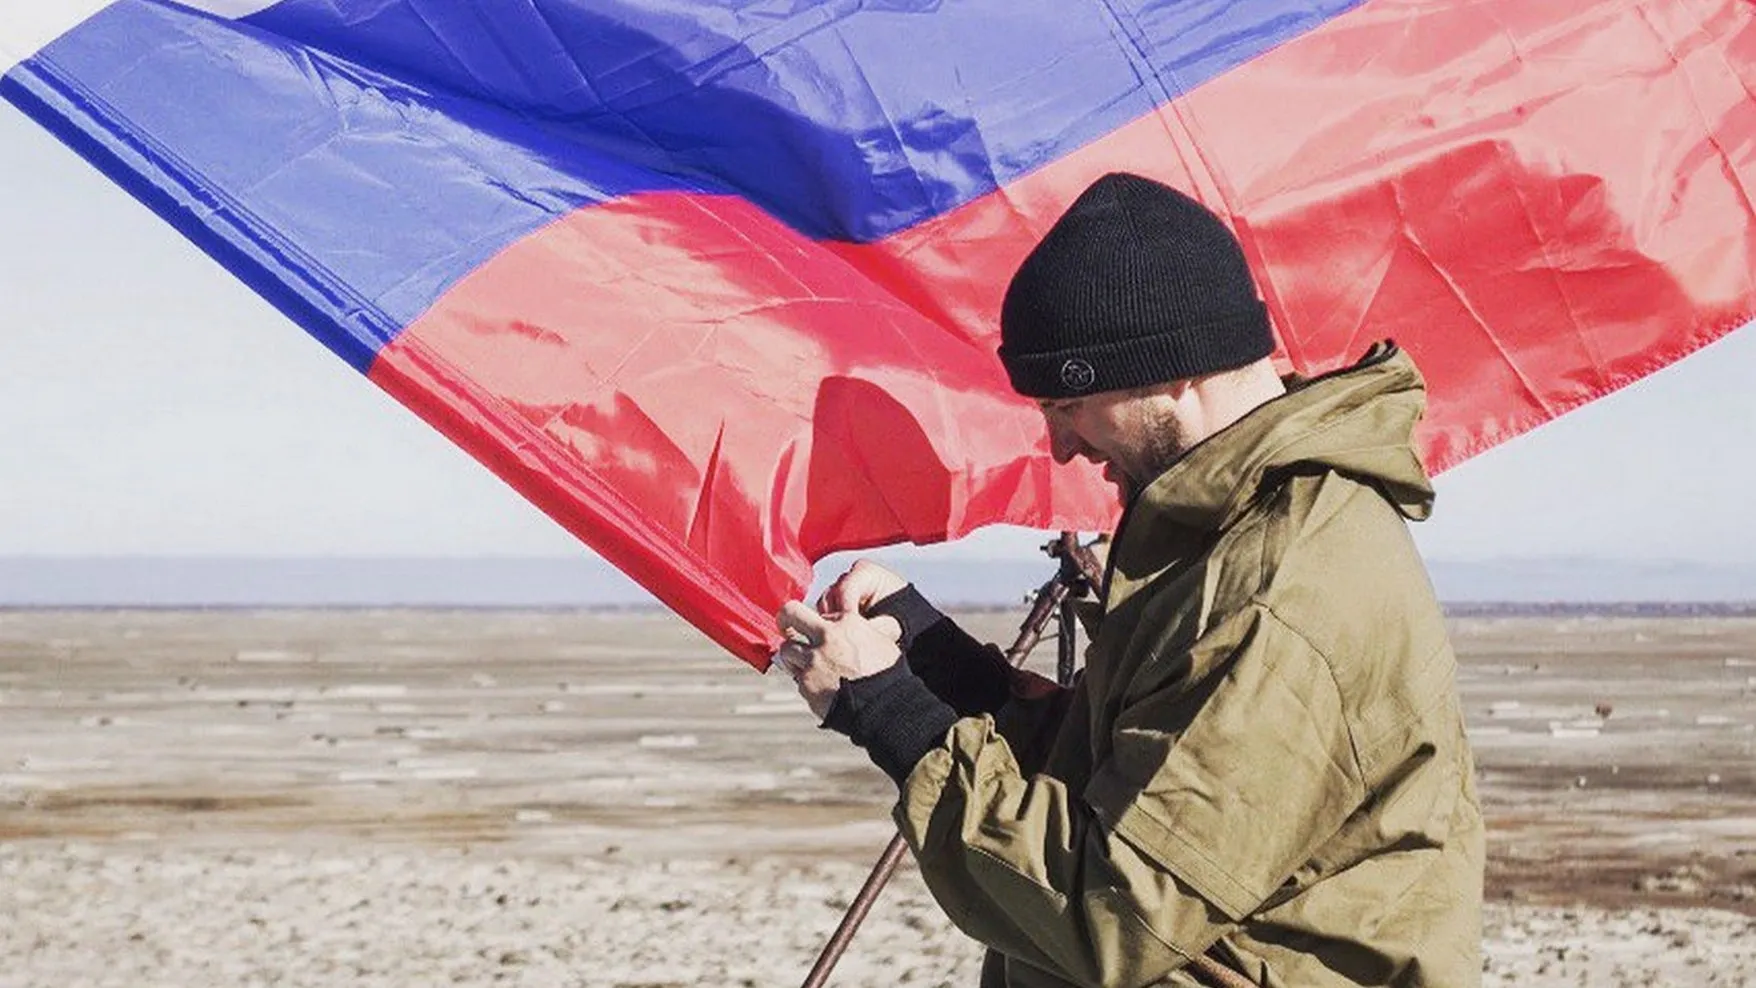 Первый десант на острове Вилькицкого высадился в 2017 году. Фото предоставлено Евгением Рожковским